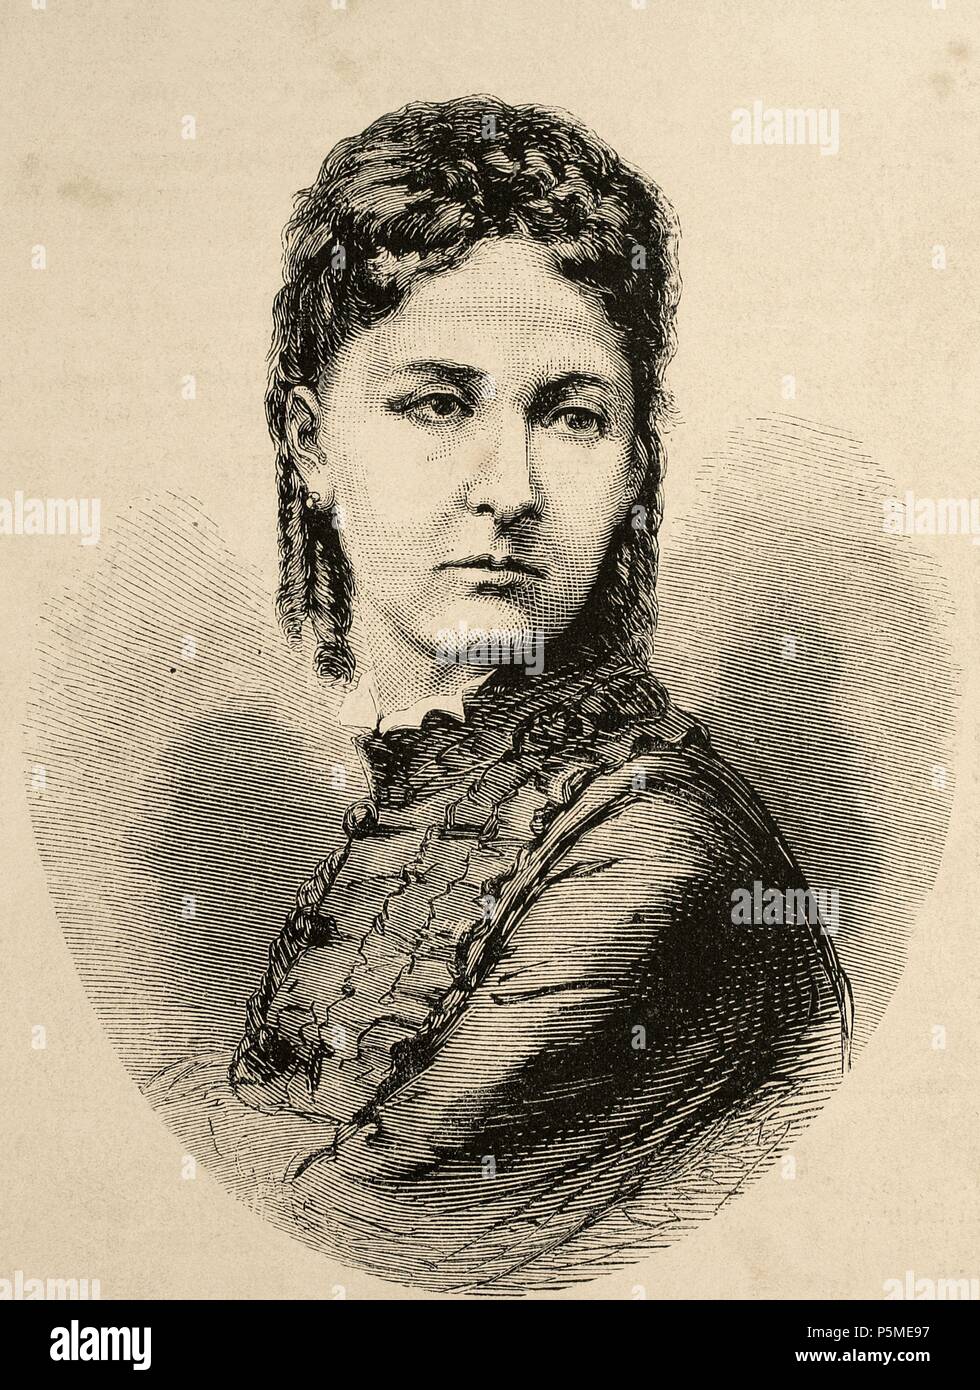 Maria Vittoria dal Pozzo (1867-1876). Königin von Spanien. Erste Frau von König Amadeo I von Spanien. Gravur in der spanischen und amerikanischen Illustration, 1870. Stockfoto